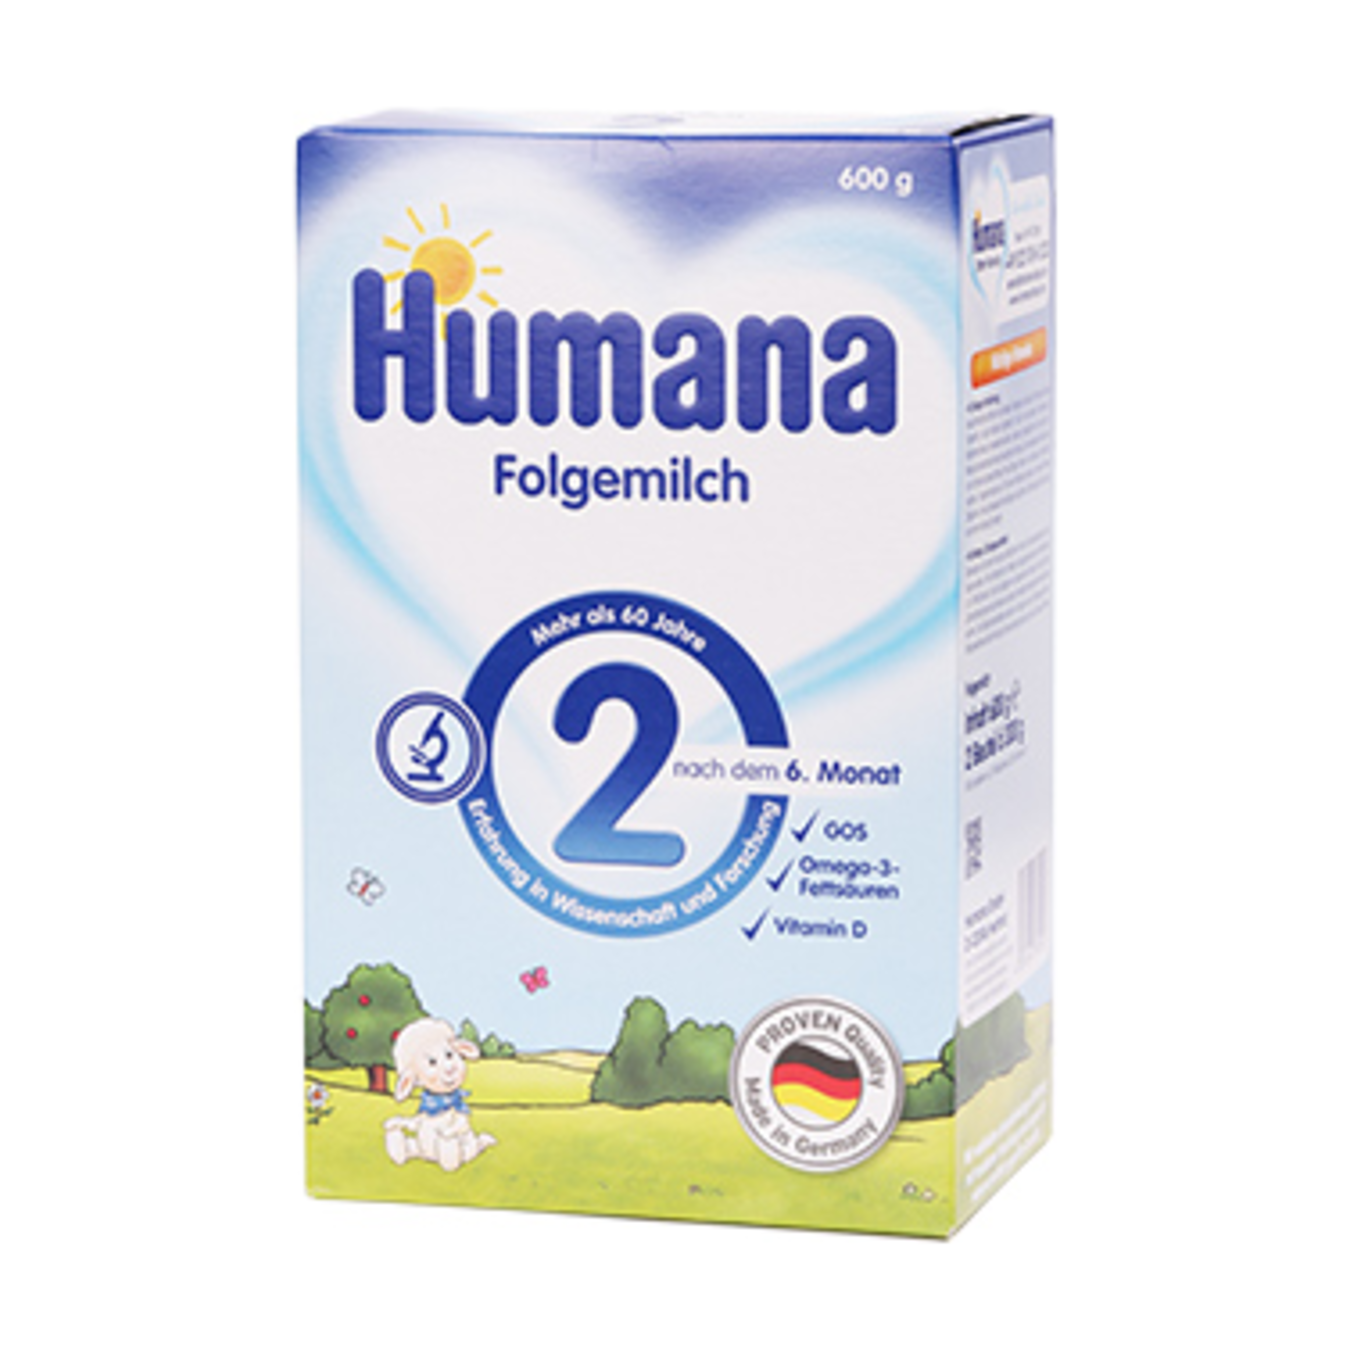 Суміш Humana 2 Prebiotik суха молочна для дітей від 6 місяців і старше 600г